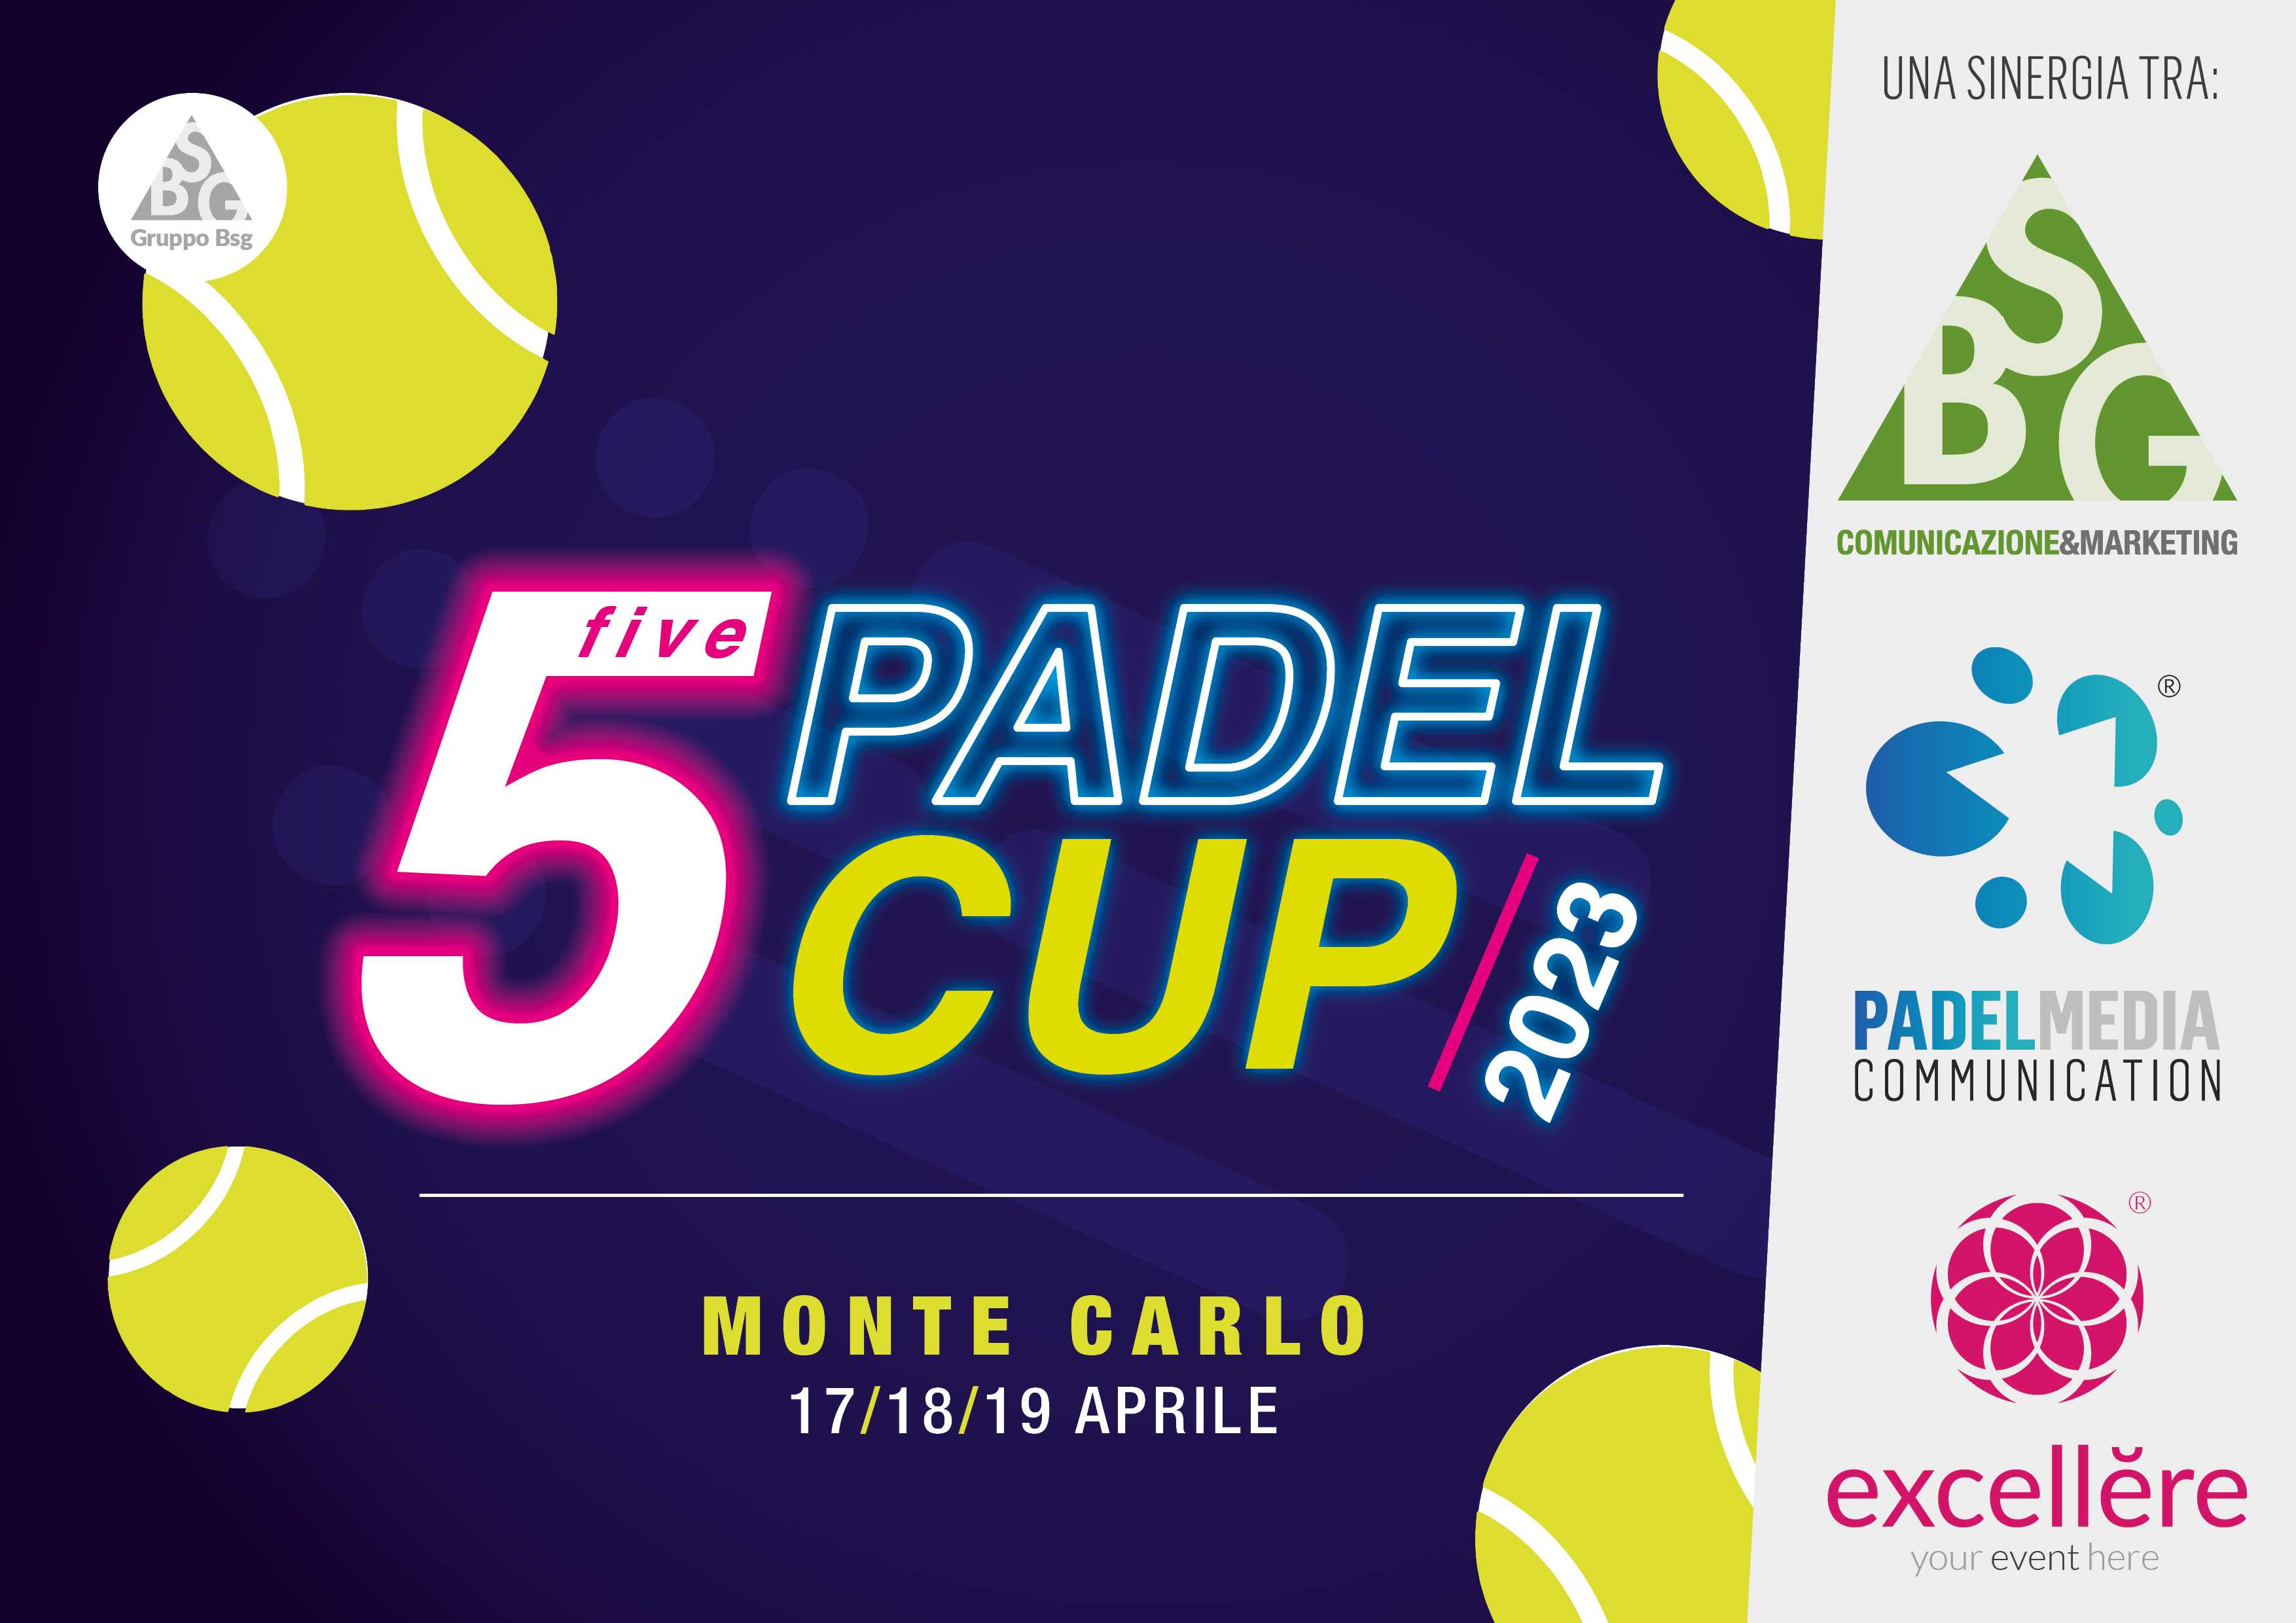 5 Padel Cup, il torneo esclusivo e inclusivo ad aprile nel Principato di Monaco